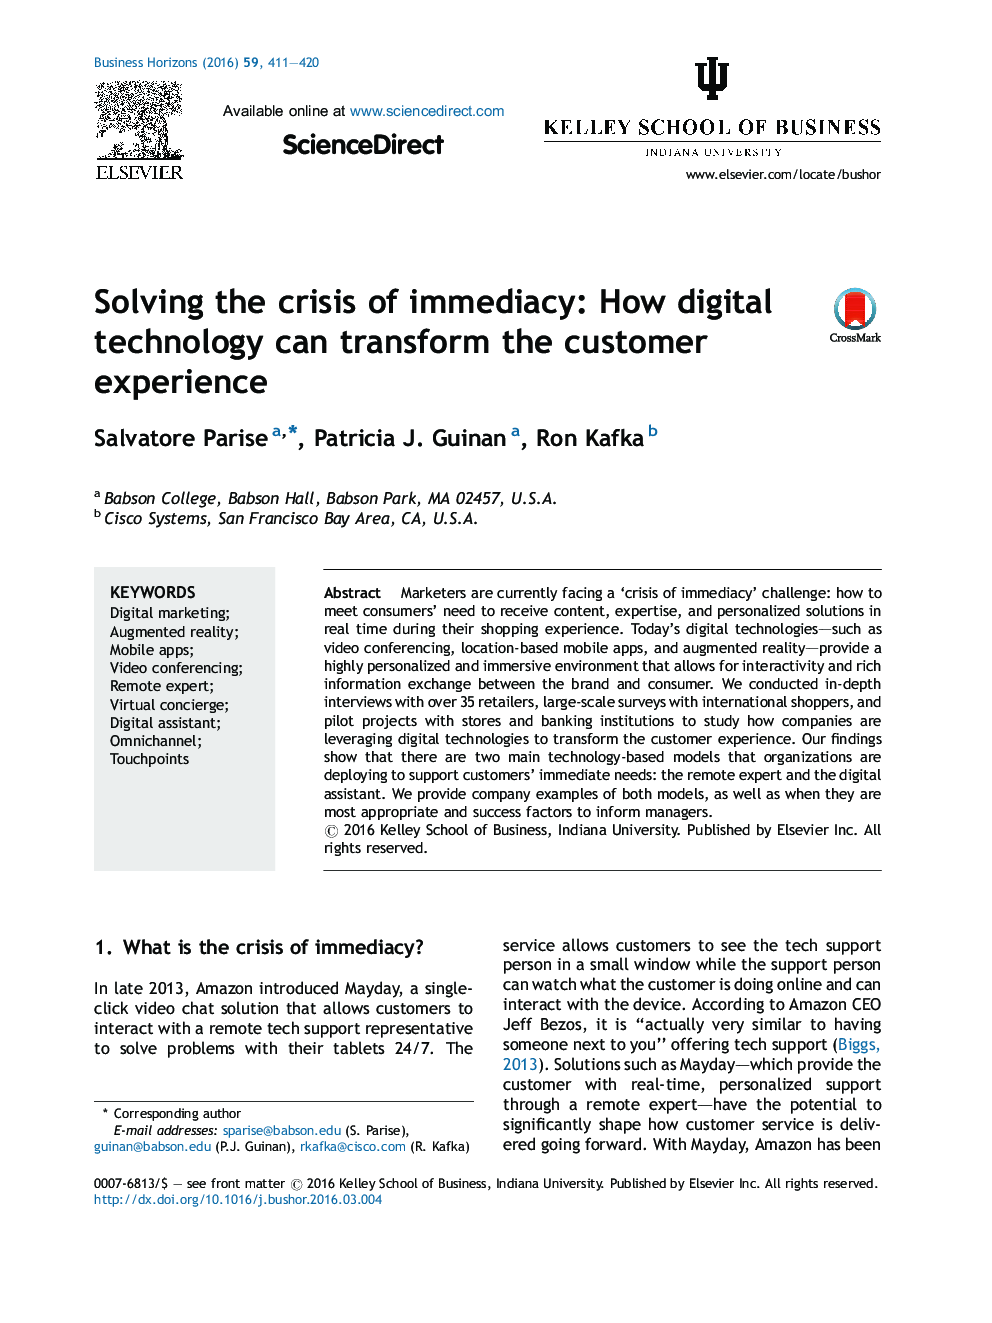 حل بحران و بی واسطه: چگونه فن آوری دیجیتال می تواند تجربه مشتری را دگرگون کند